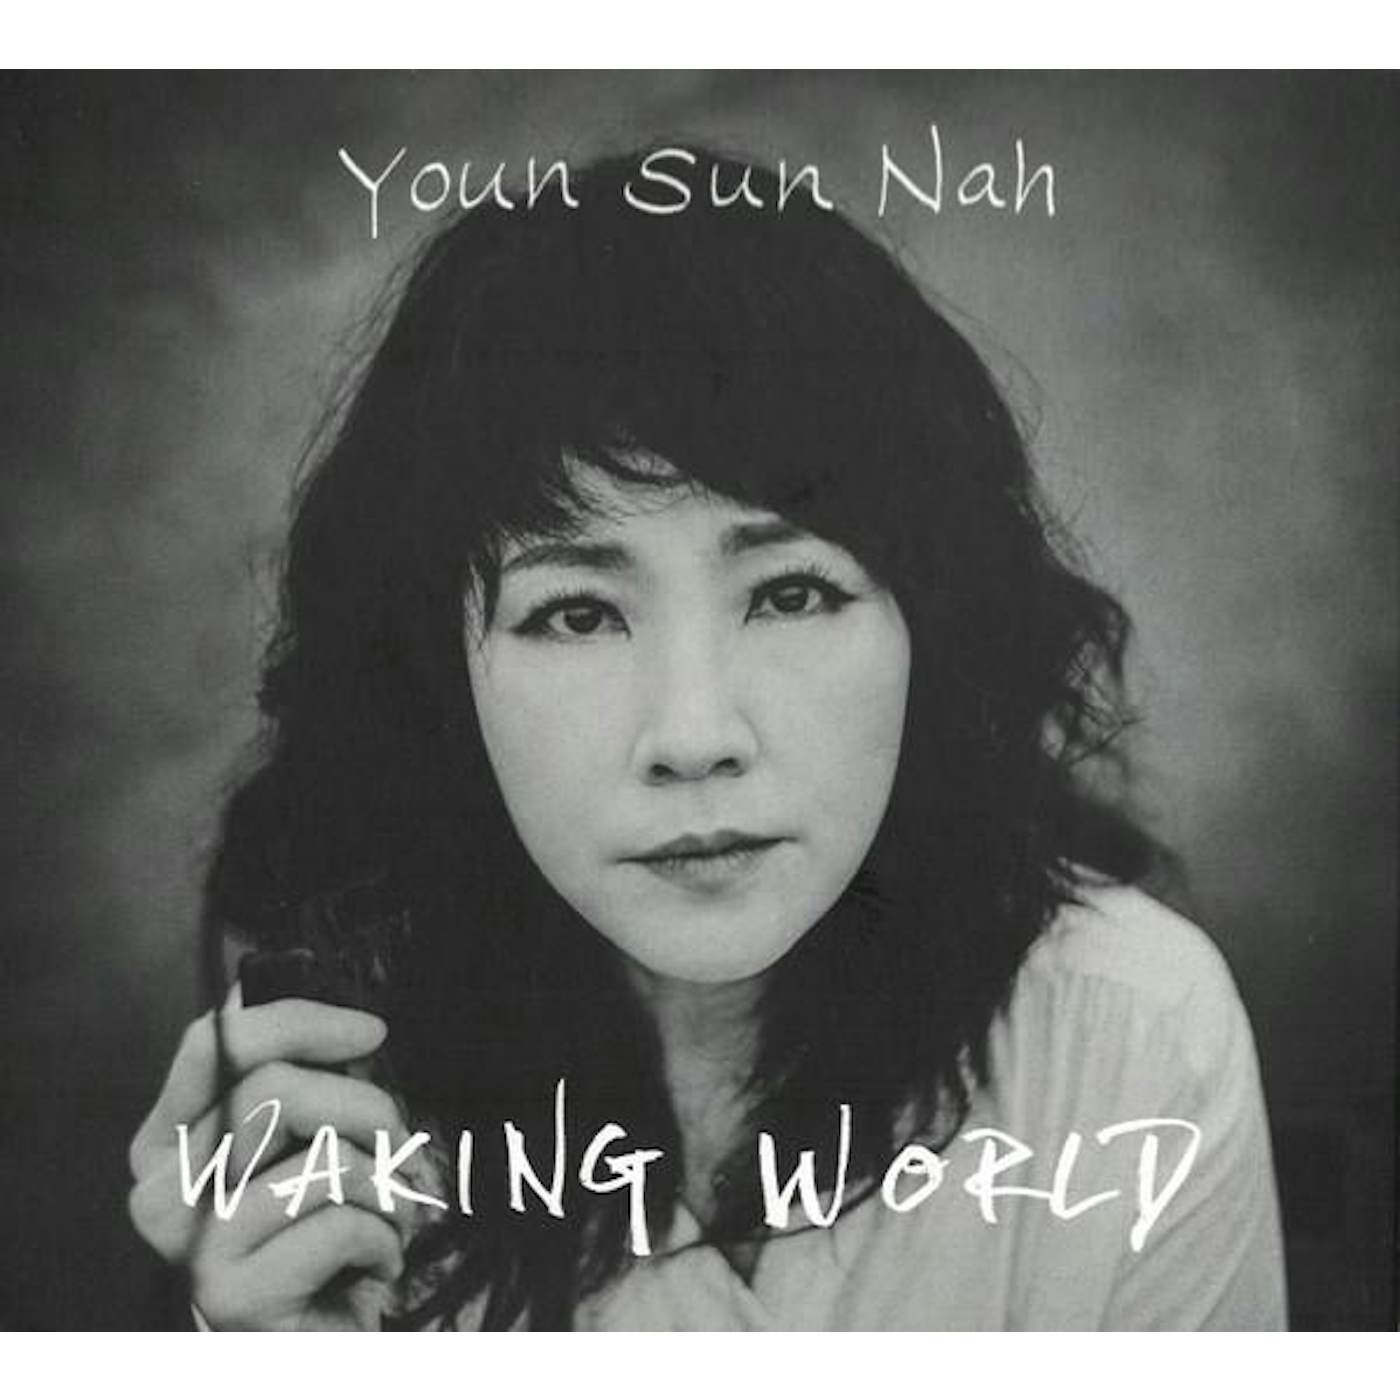 Youn Sun Nah WAKING WORLD CD